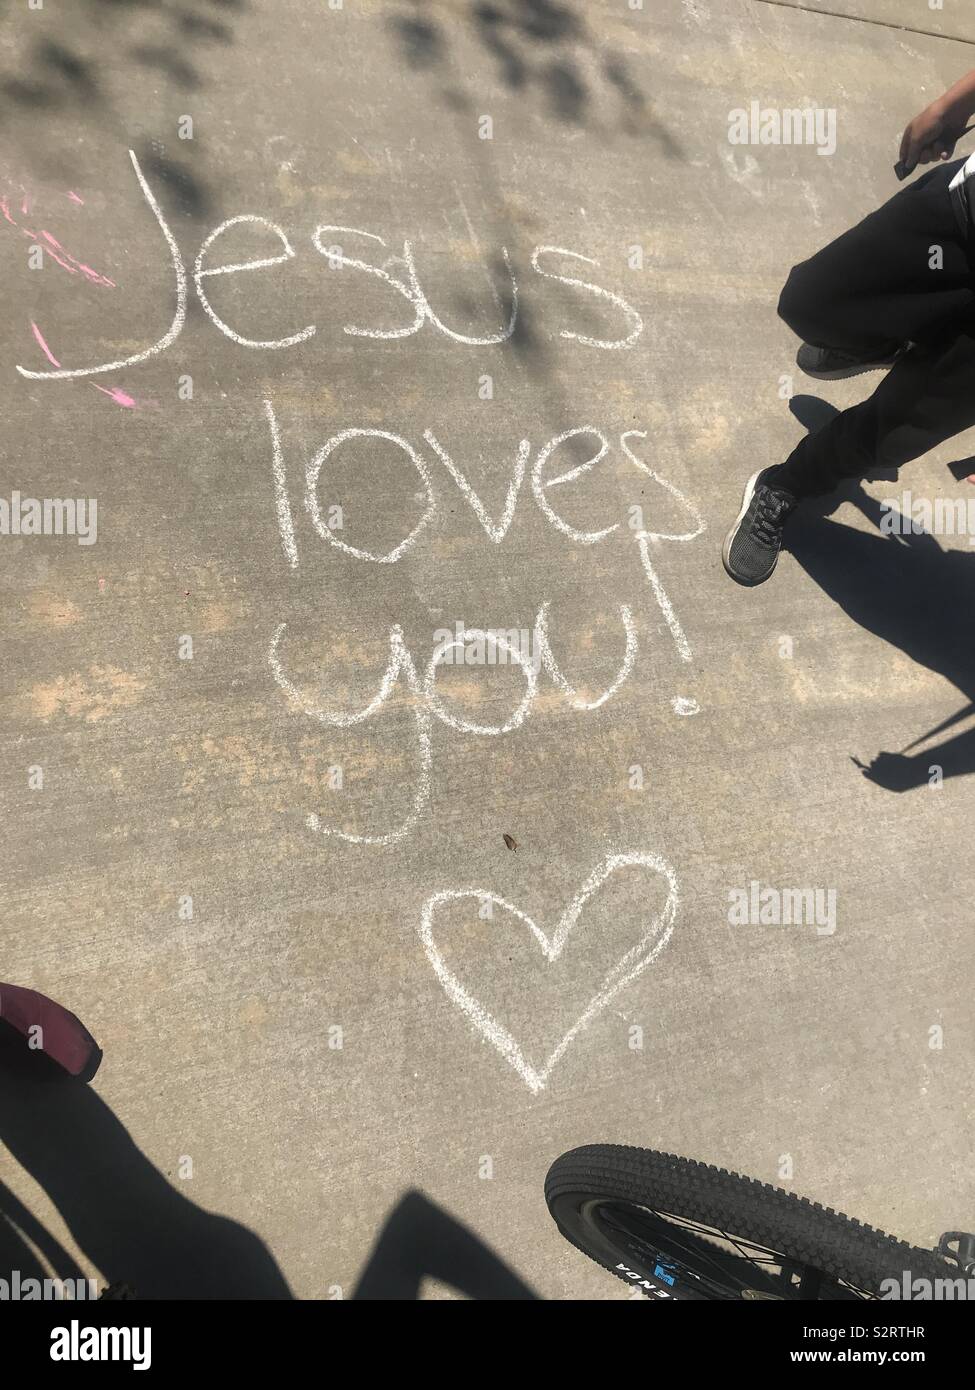 Le Graffiti trouvés sur le sol de ciment au parc avec les paroles de Jésus vous aime. L'amour et d'encouragement Banque D'Images